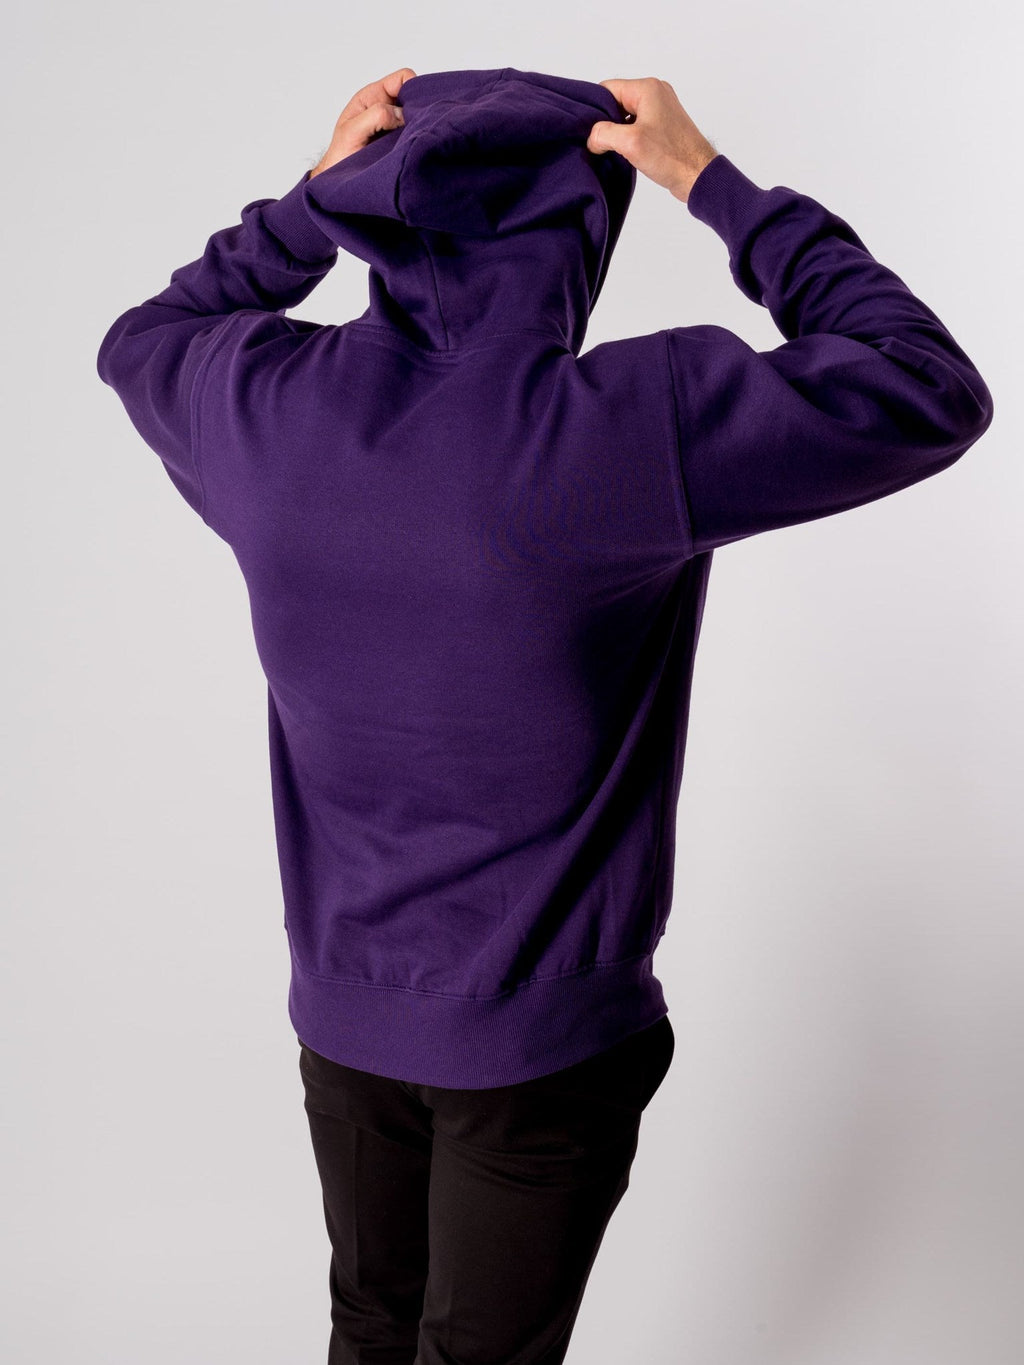 基本连帽衫 - 紫色